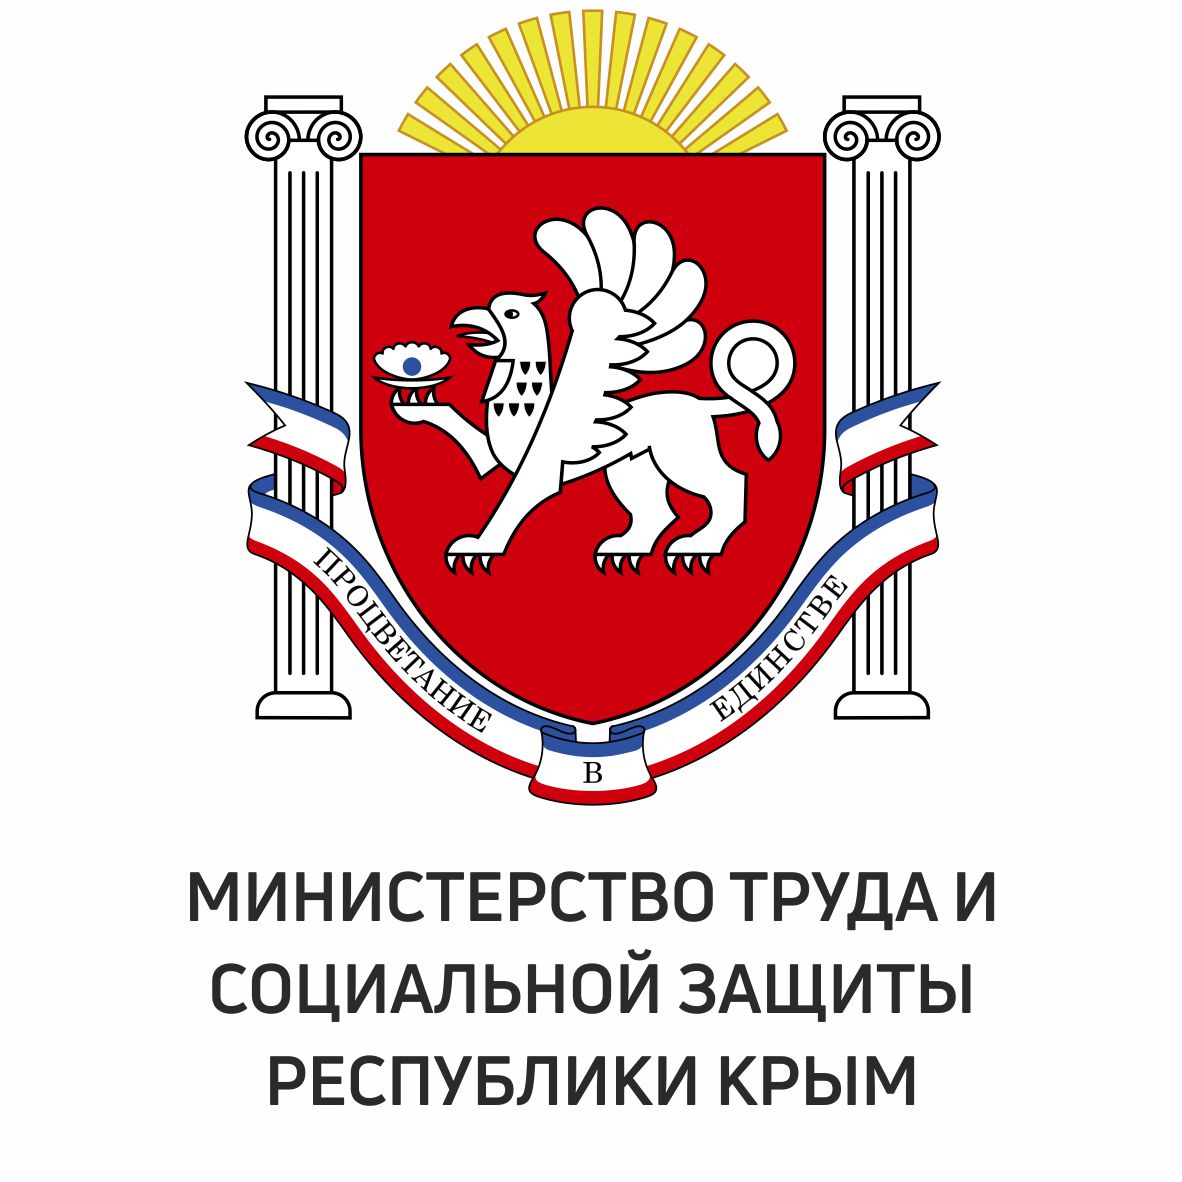 Министерство труда и социальной защиты Республики Крым